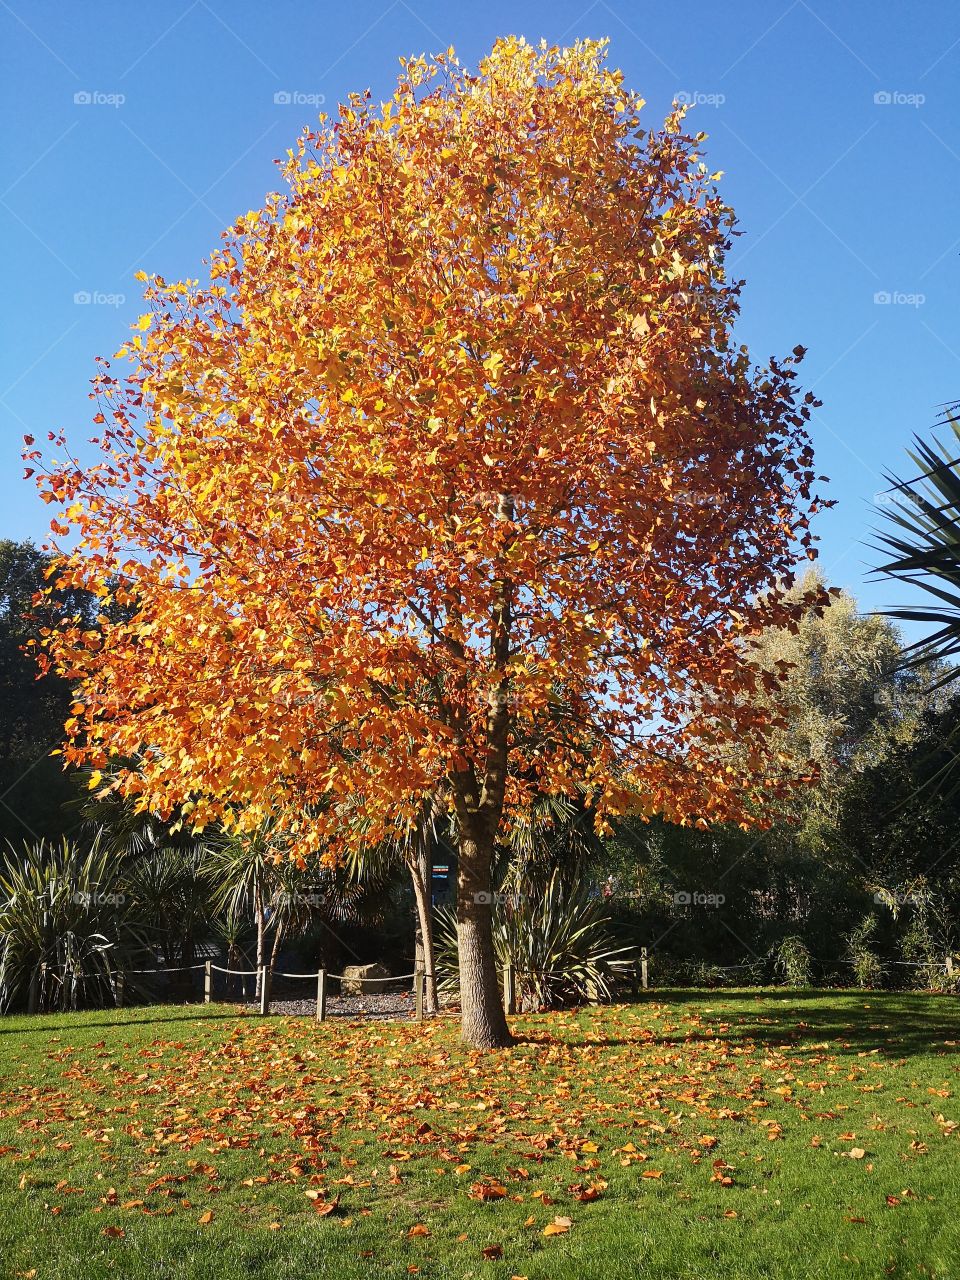 beautiful autumn tree